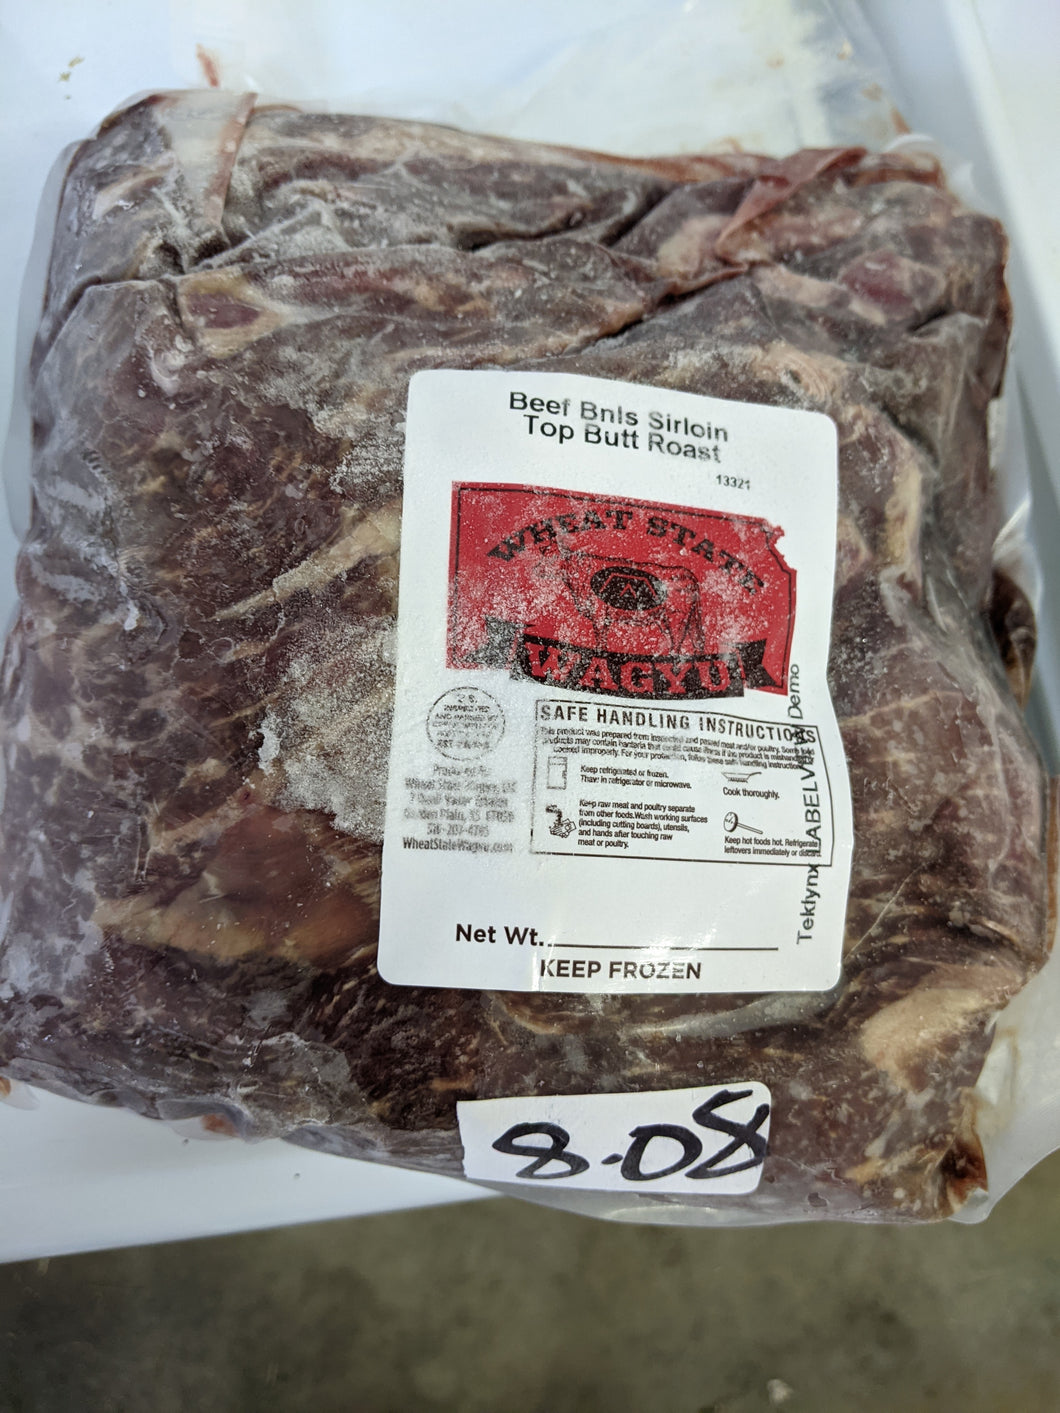 Full Blood Beef Boneless Top Butt Sirloin 8.08 pounds